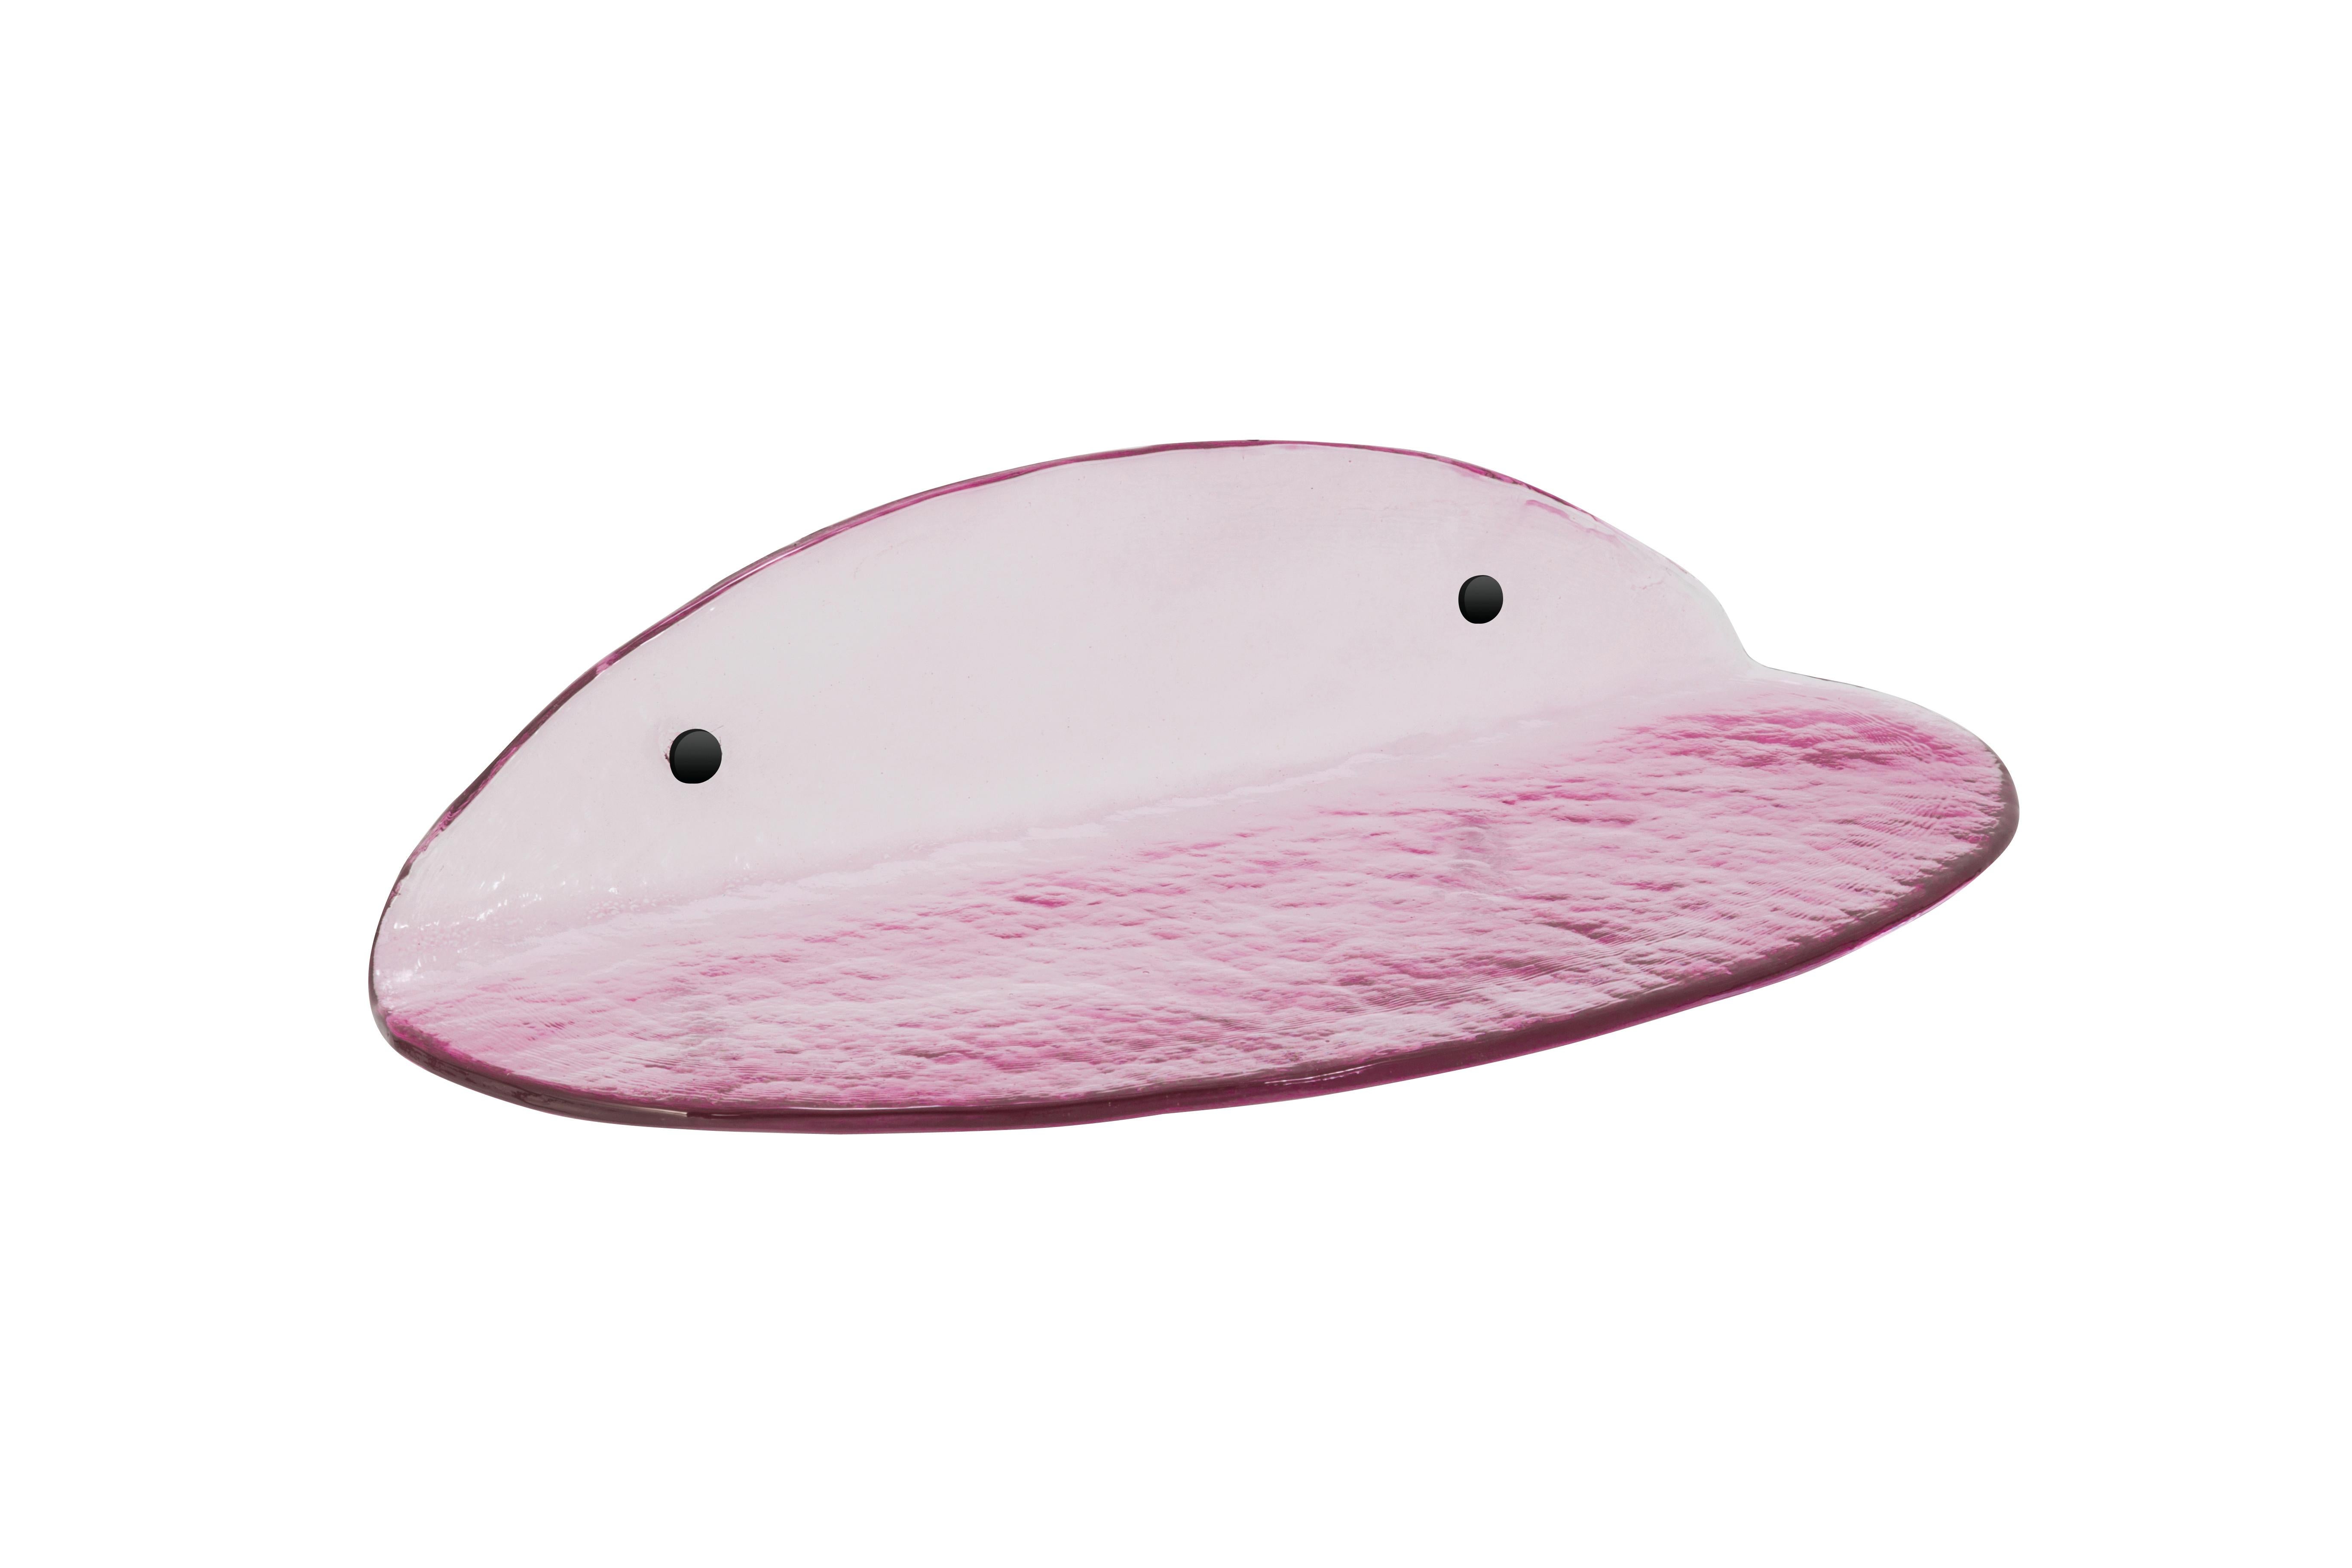 Blash medium rosa Regal von Pulpo.
Abmessungen: T50 x B20 x H11 cm.
MATERIAL: Gussglas.

Auch in verschiedenen Farben erhältlich. 

Das Blash Wandregal aus Gussglas ist mehr ein skulpturales Element als eine Aufbewahrungsmöglichkeit. Es bringt Farbe